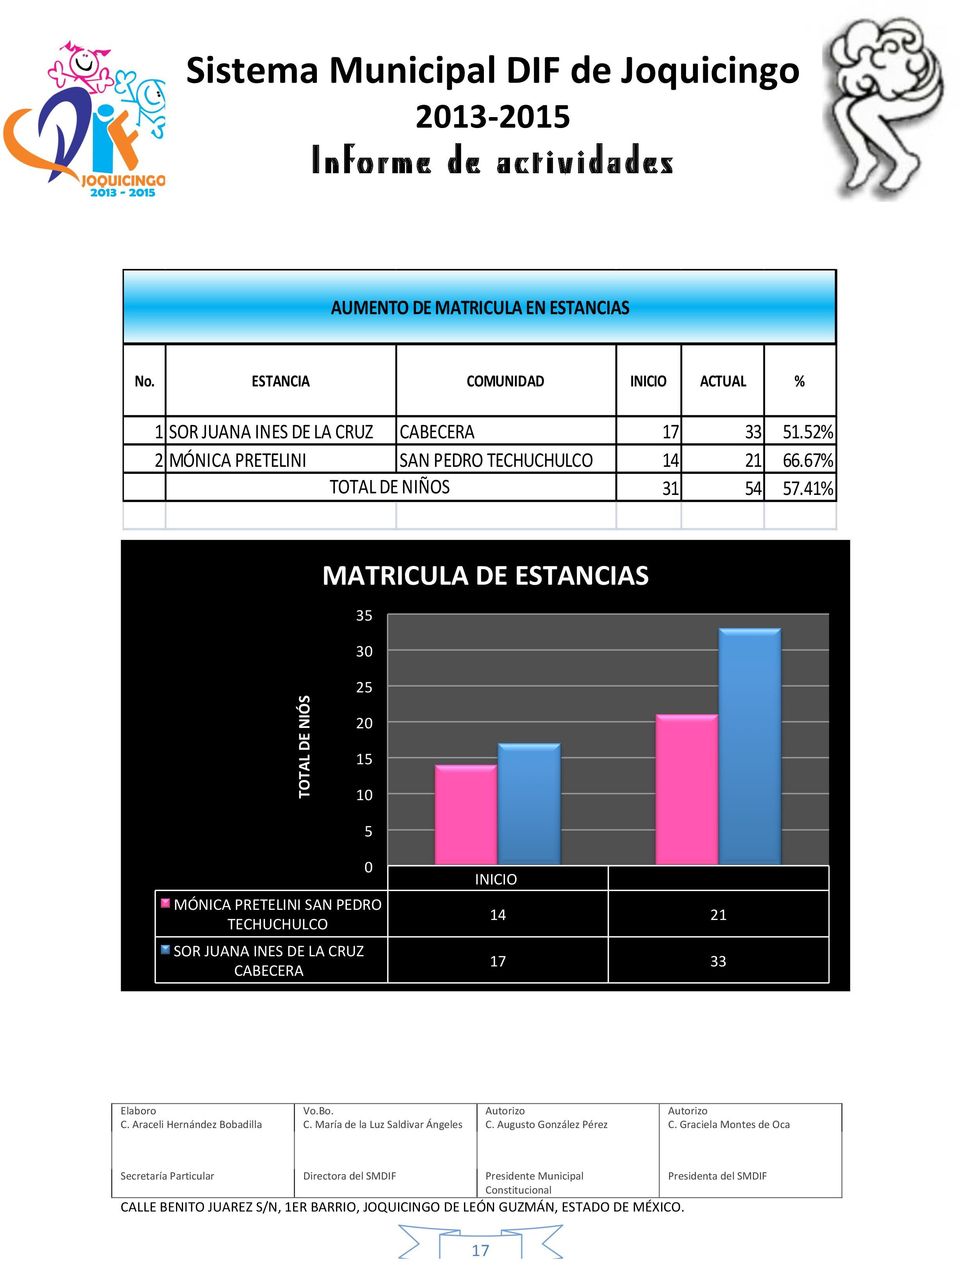 52% 2 MÓNICA PRETELINI SAN PEDRO TECHUCHULCO 14 21 66.67% TOTAL DE NIÑOS 31 54 57.